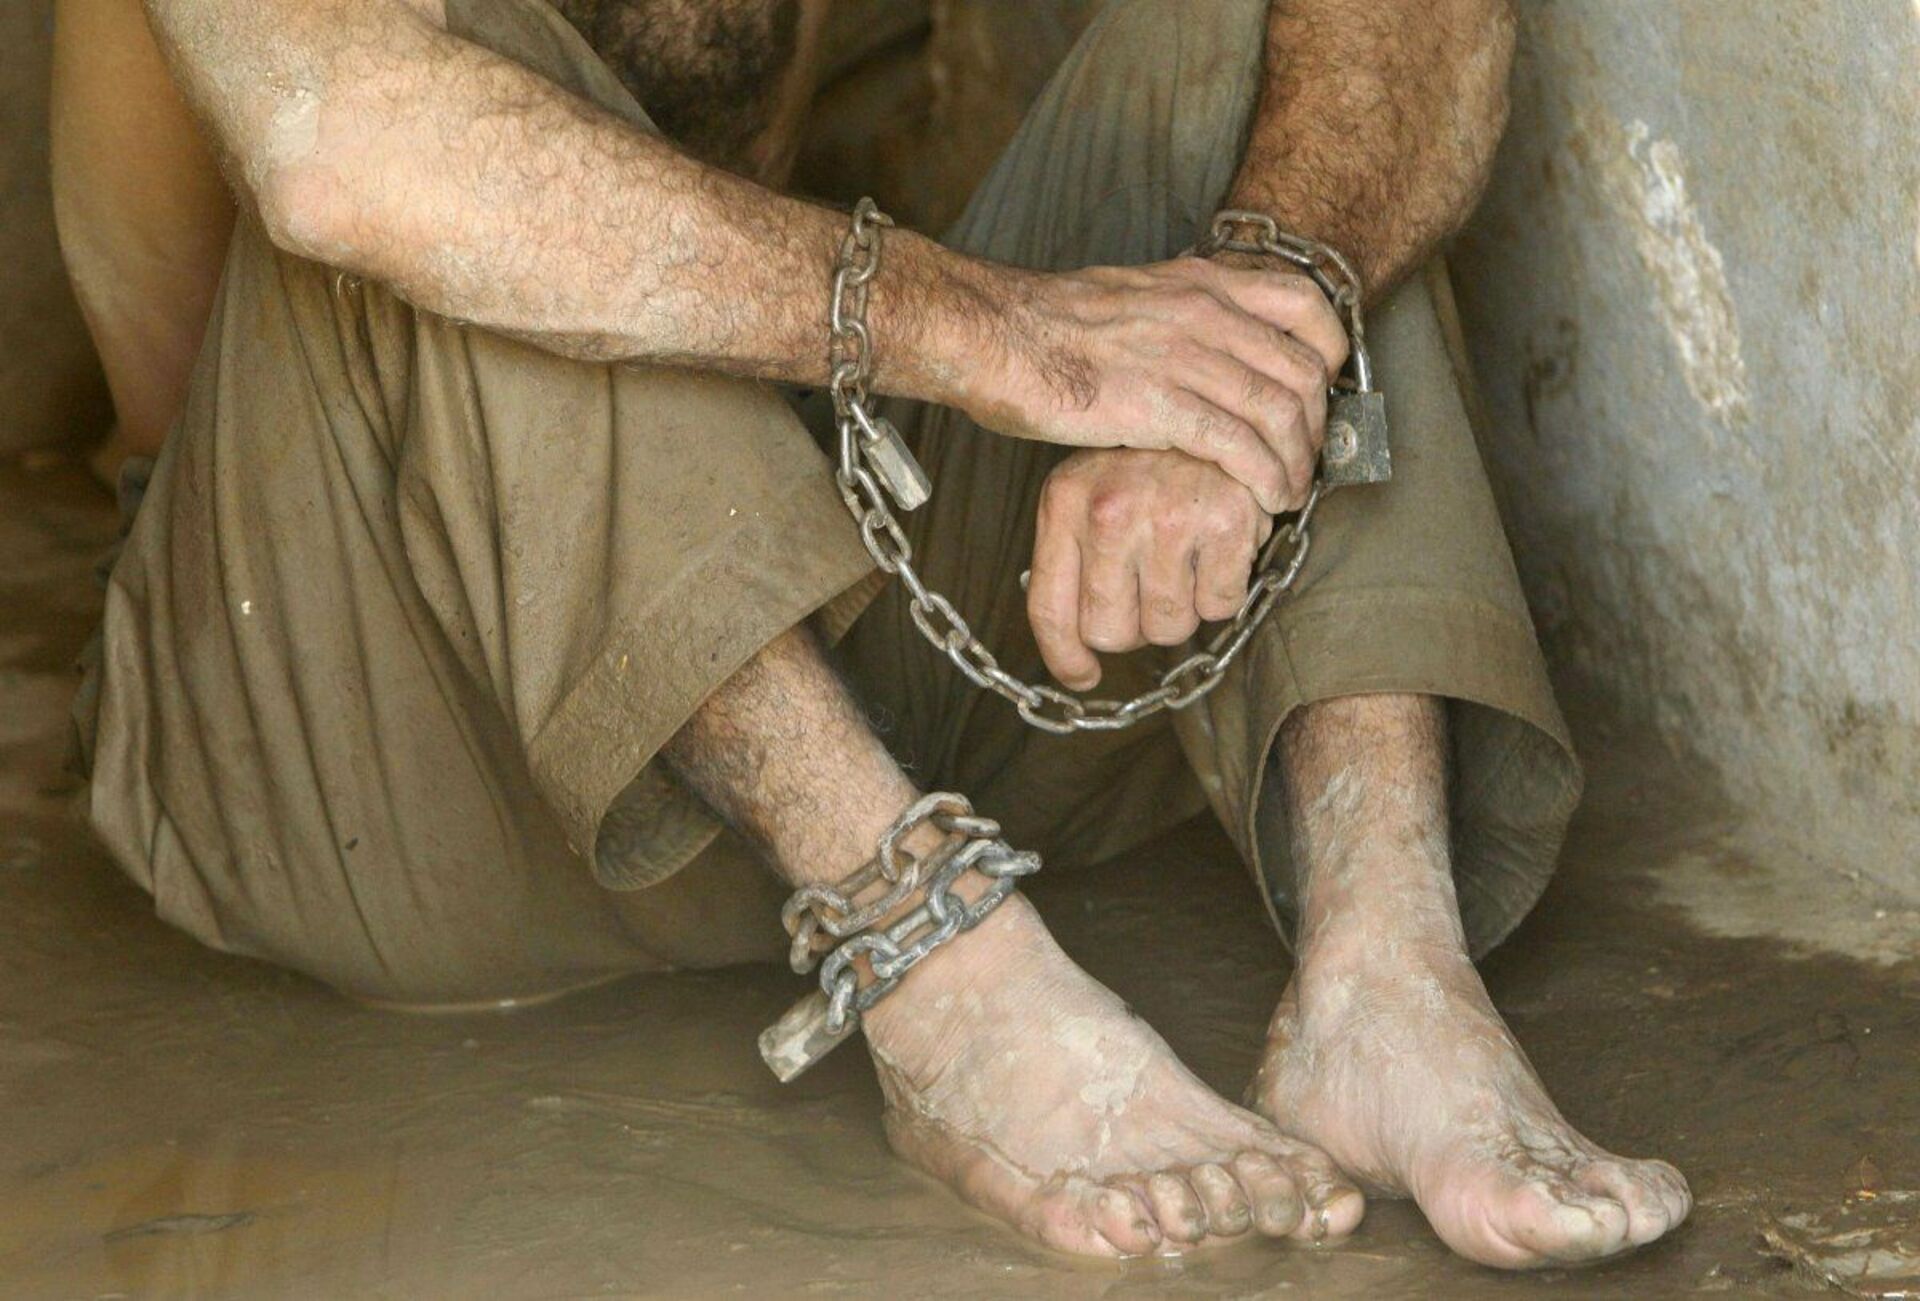 Эксплуатация торговли людей. Человек в кандалах. Рабство. Кандалы на ногах. Трудовое рабство.